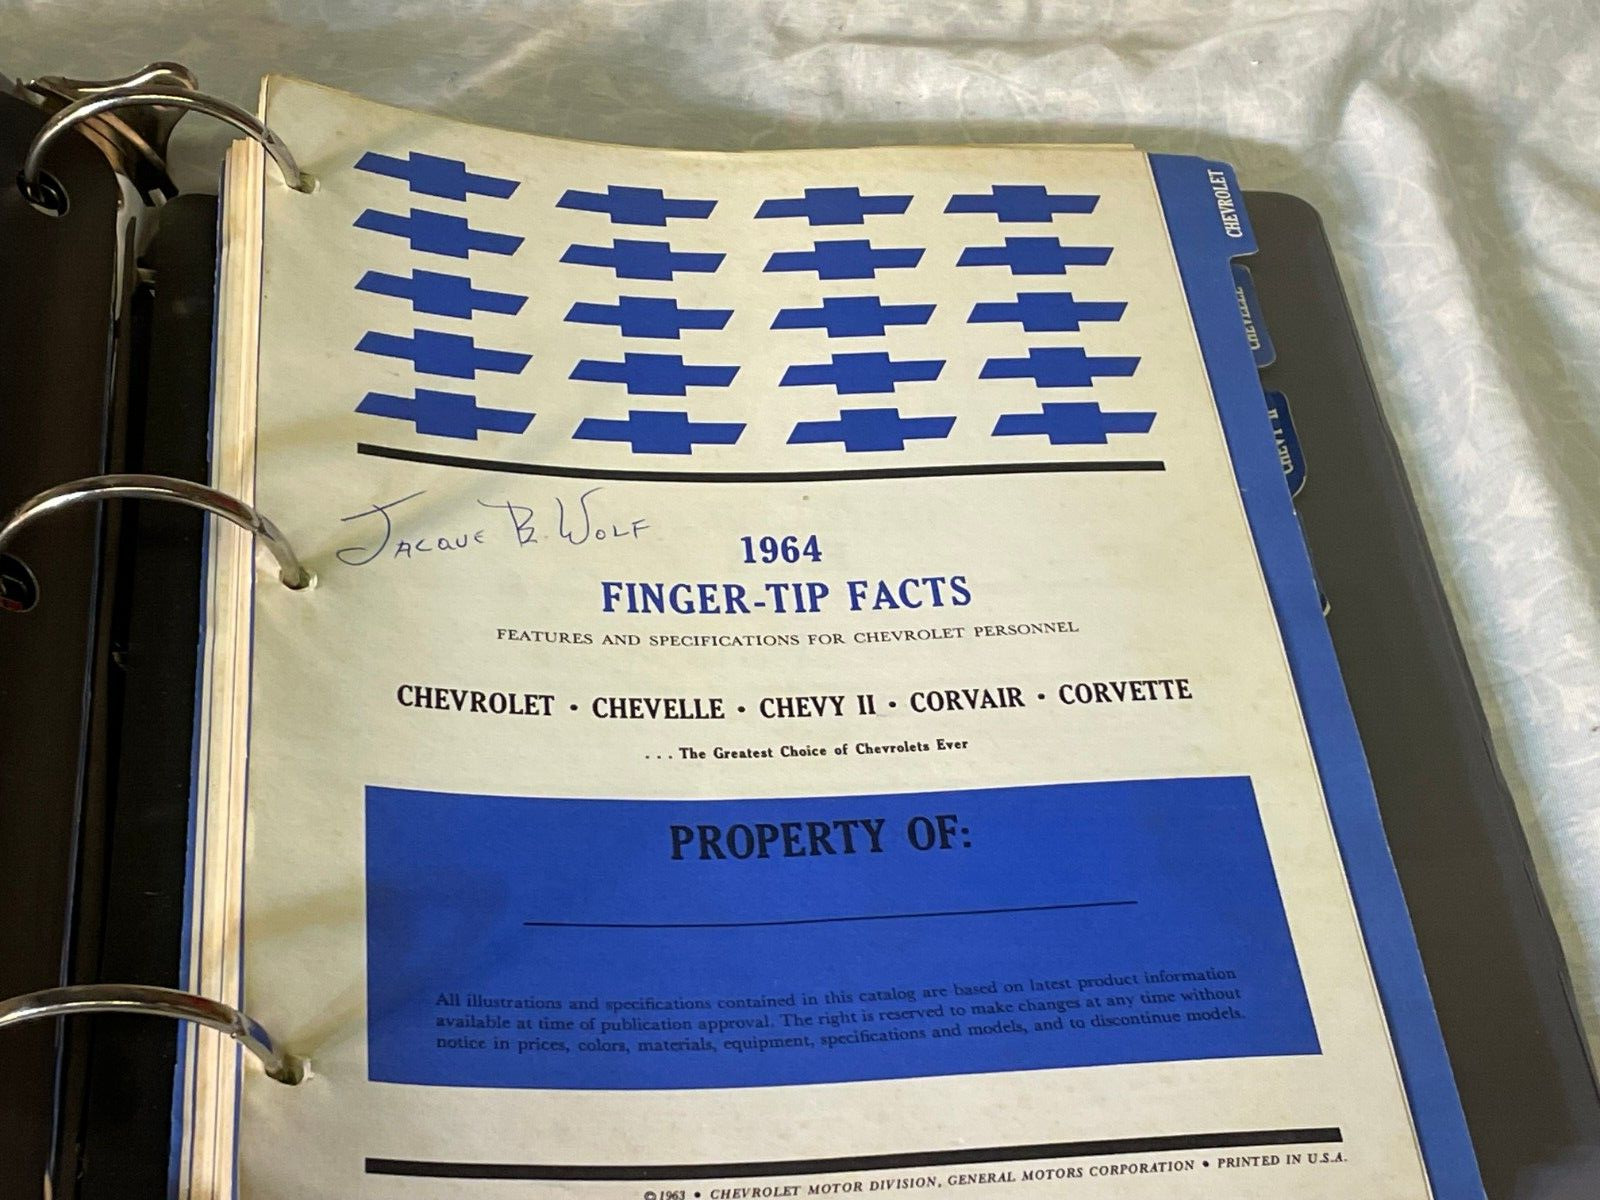 1964 Chevrolet Finger-Tip Facts Dealer Album Corvette Impala SS Chevelle Police